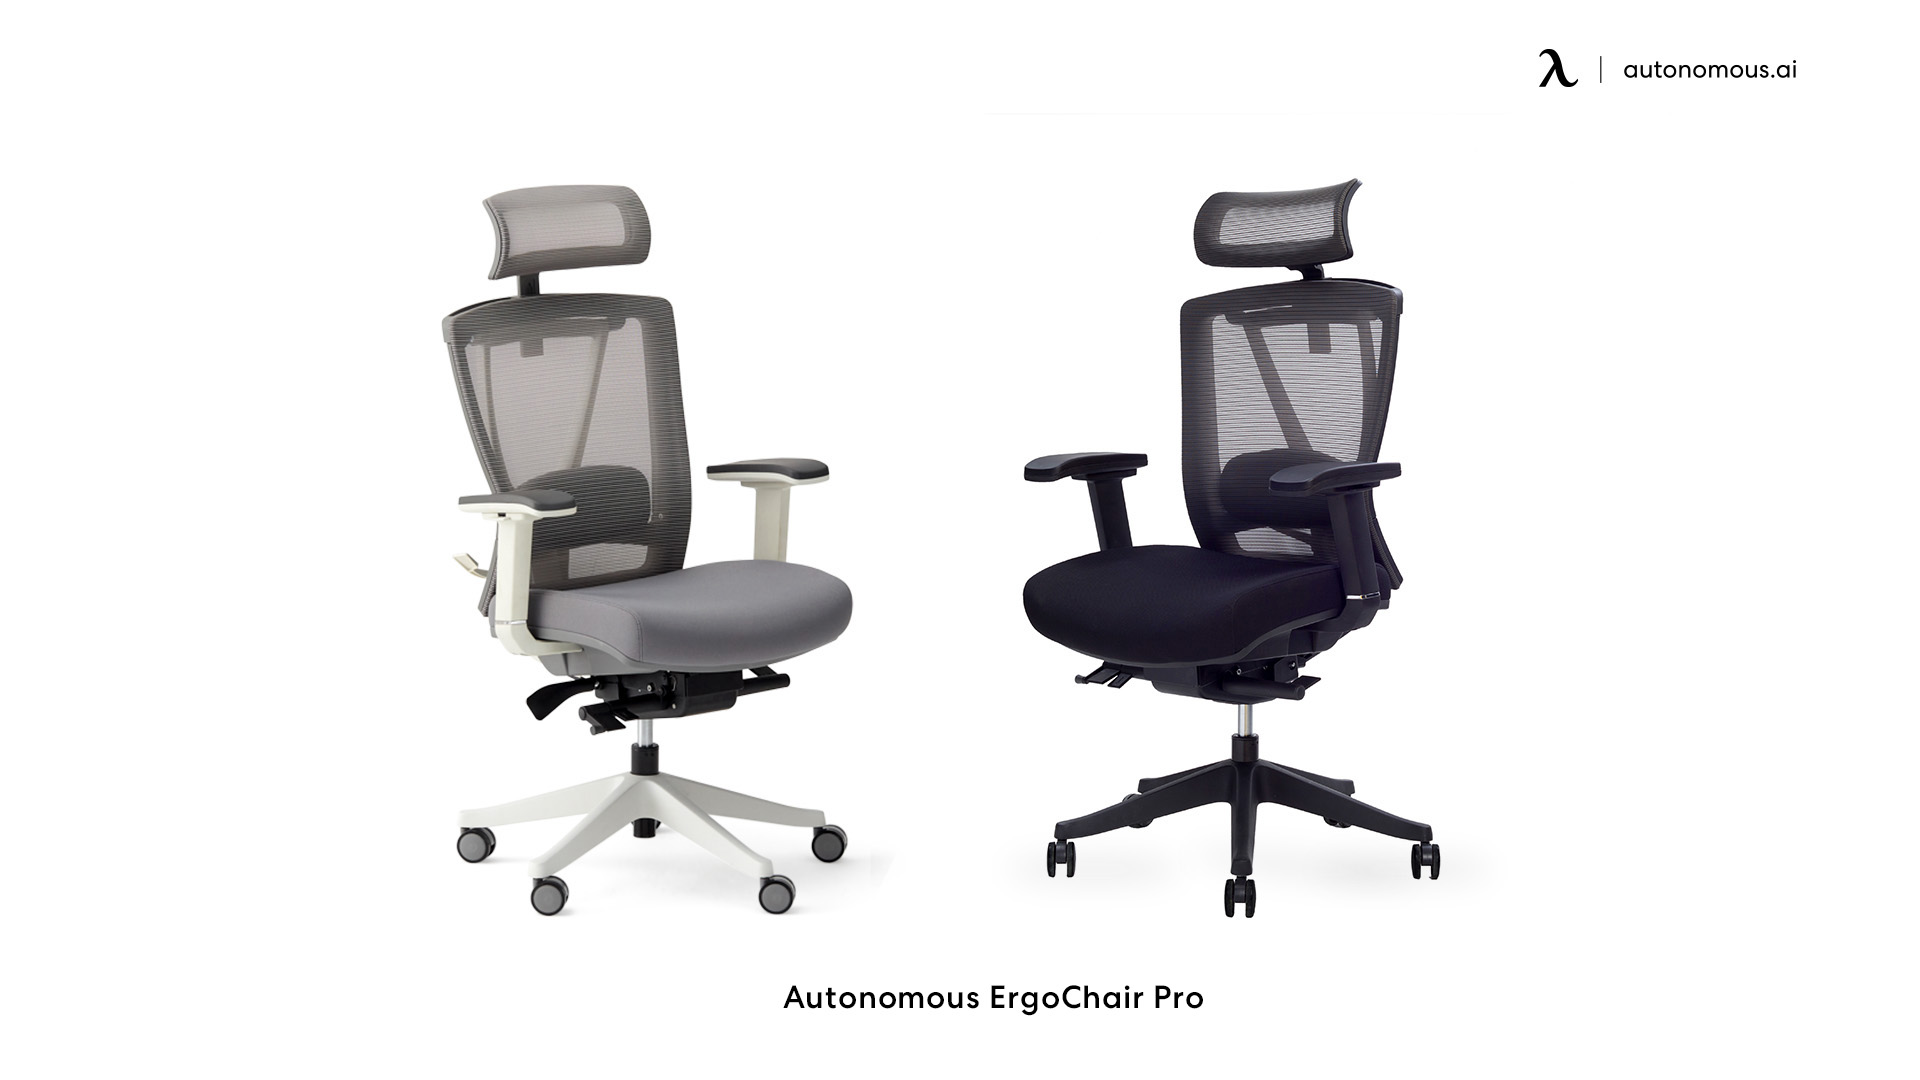 ErgoChair Pro comfortable desk chair